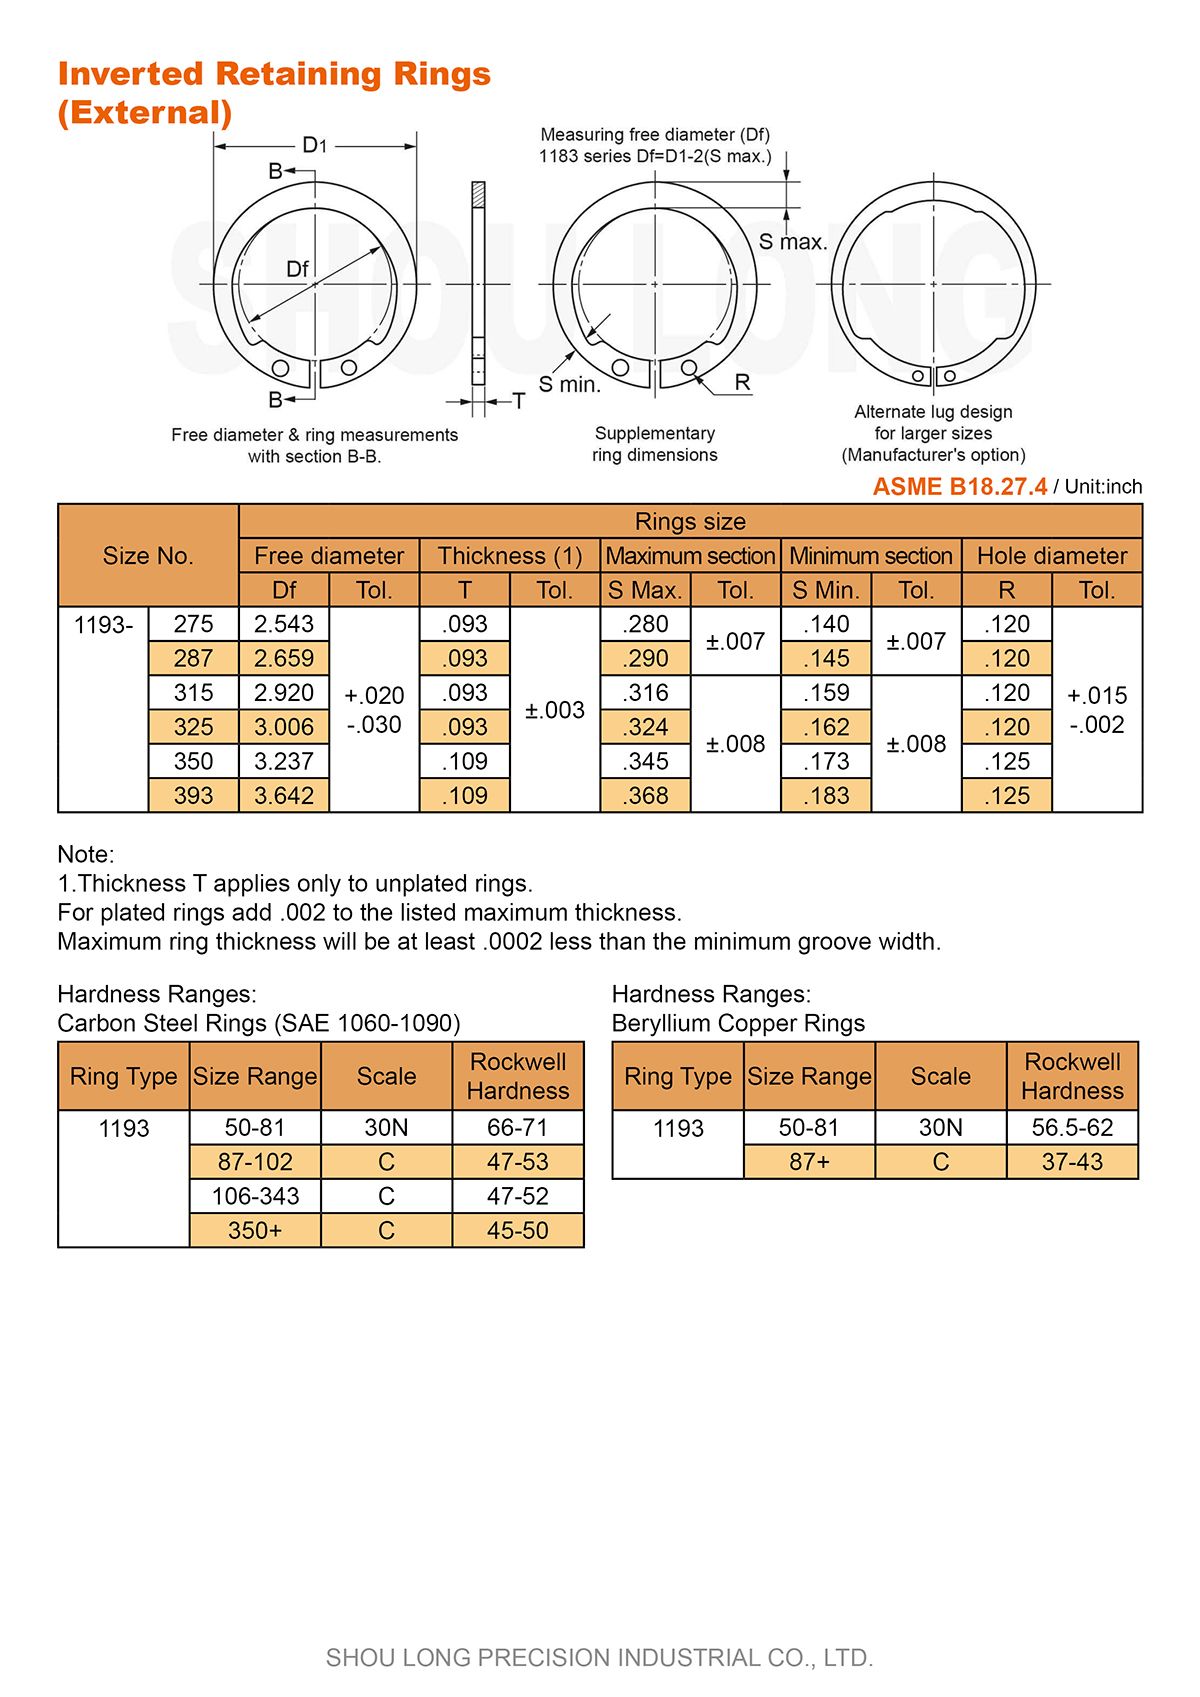 Specifikace invertovaných upevňovacích kroužků pro hřídel dle ASME/ANSI B18.27.4 - 2